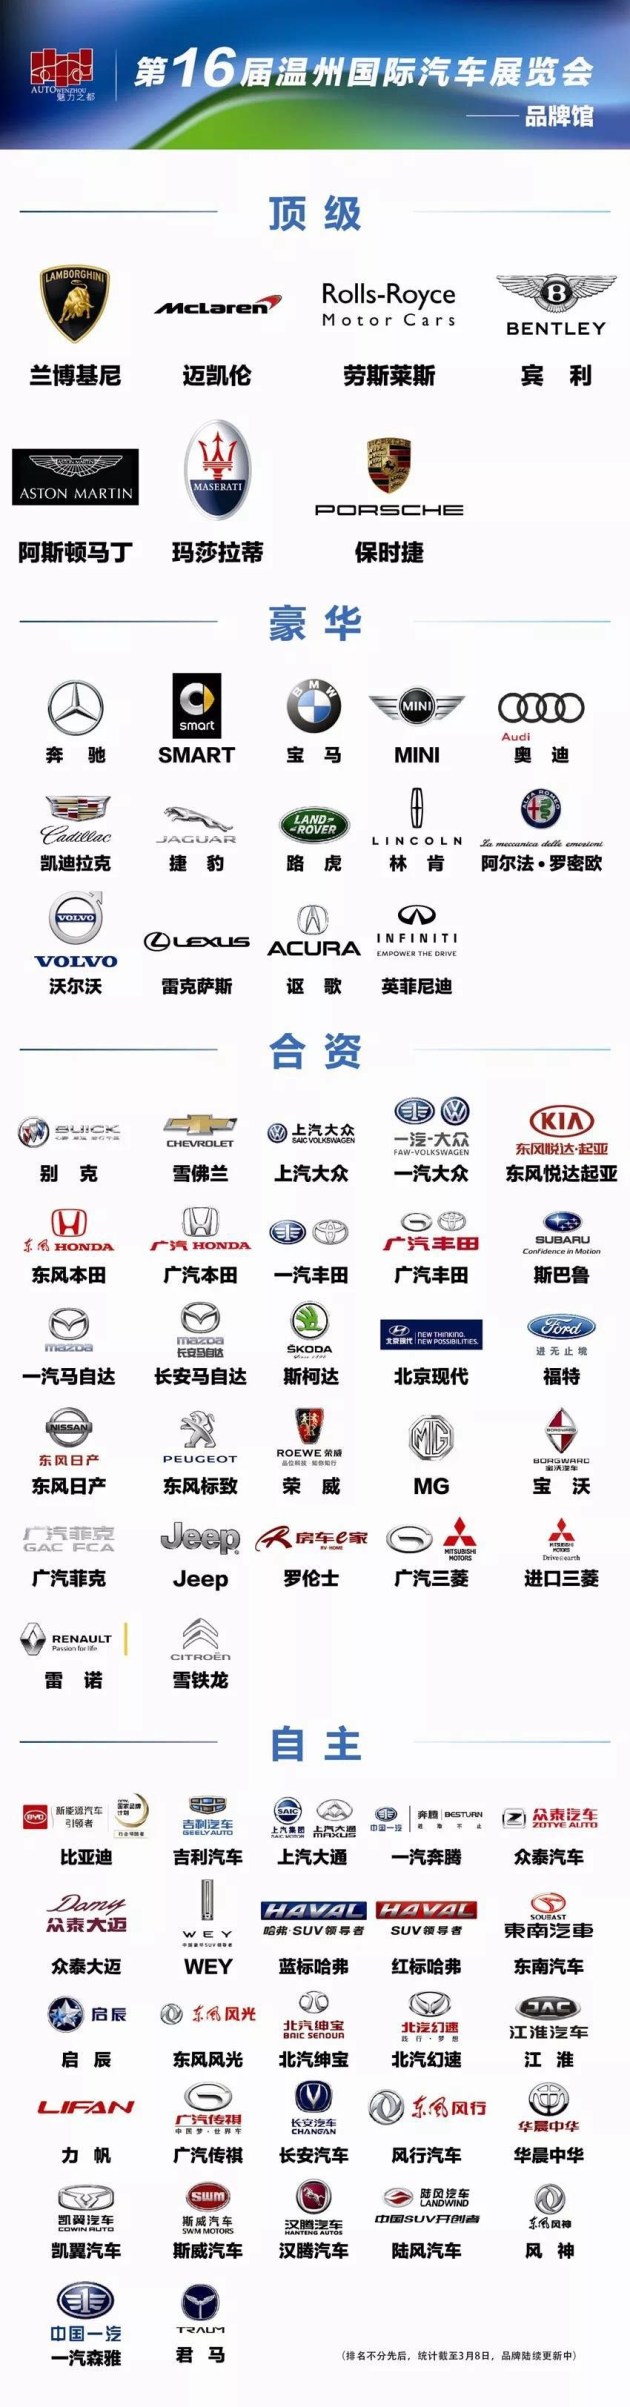 【图文】2018温州国际车展即将在温州会展中心隆重举办